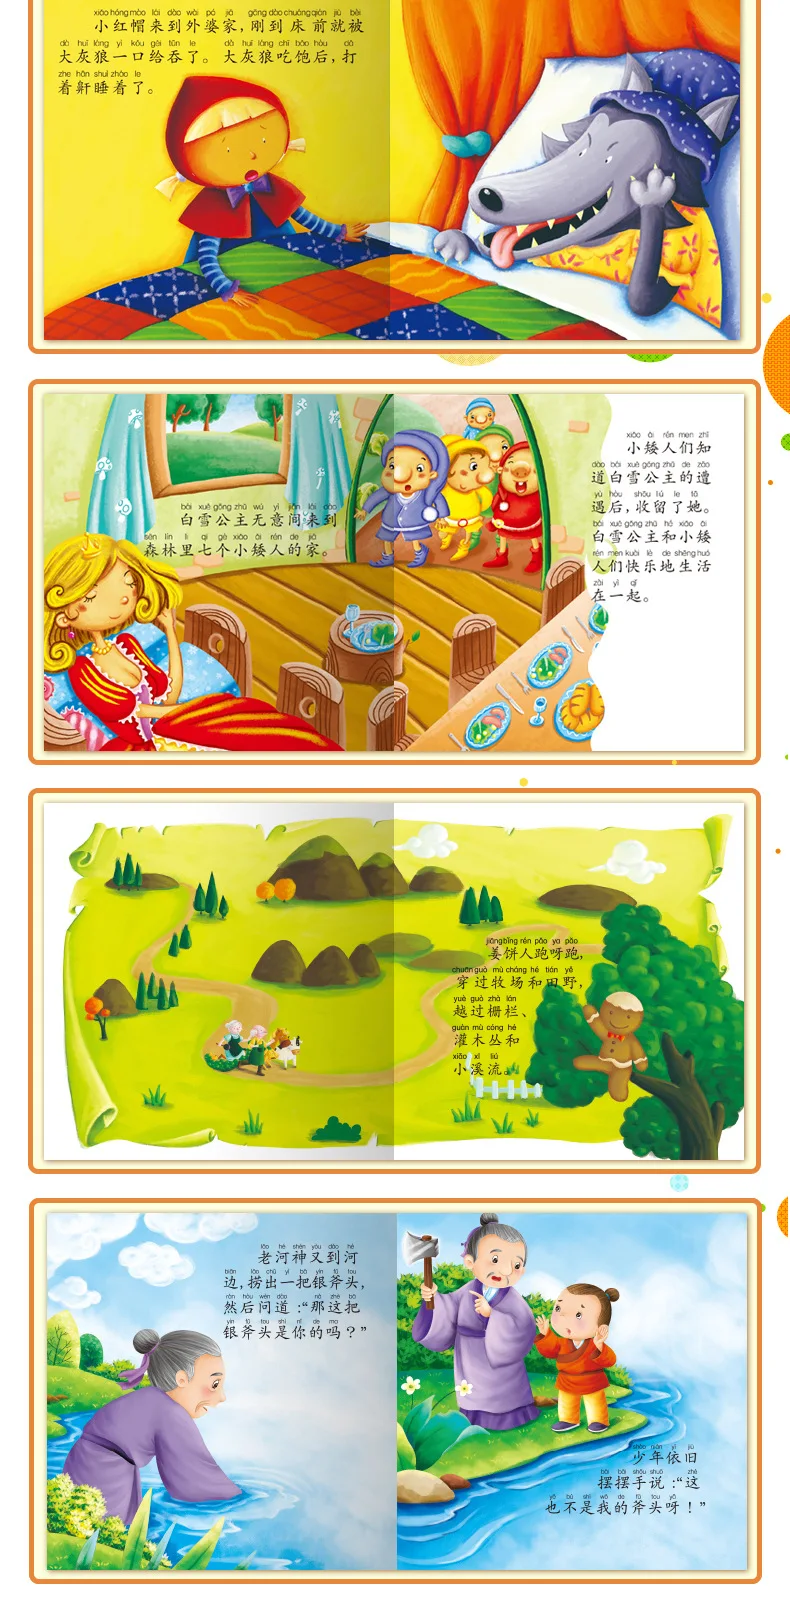 60 шт./лот китайская история детская книга содержит аудио трек и пиньинь и картинки выучить китайские книги для детей/mi/art Book artbook